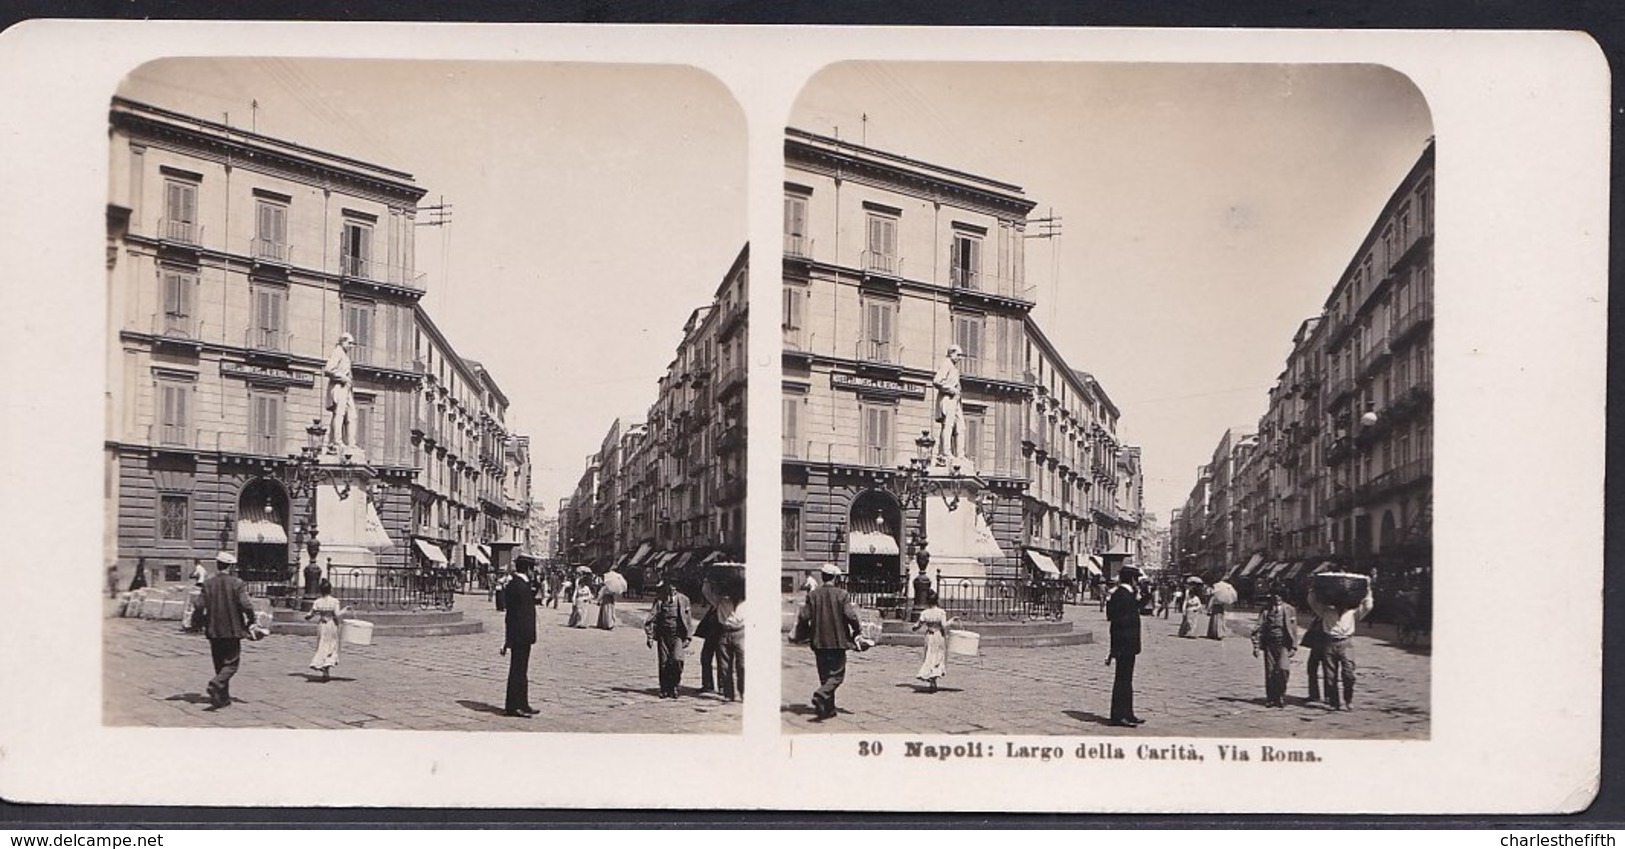 1906 VECCHIA FOTO STEREO ITALIA - CAMPANIA - ** NAPOLI ; LARGO DELLA CARITA - VIA ROMA ** RARE - Stereo-Photographie